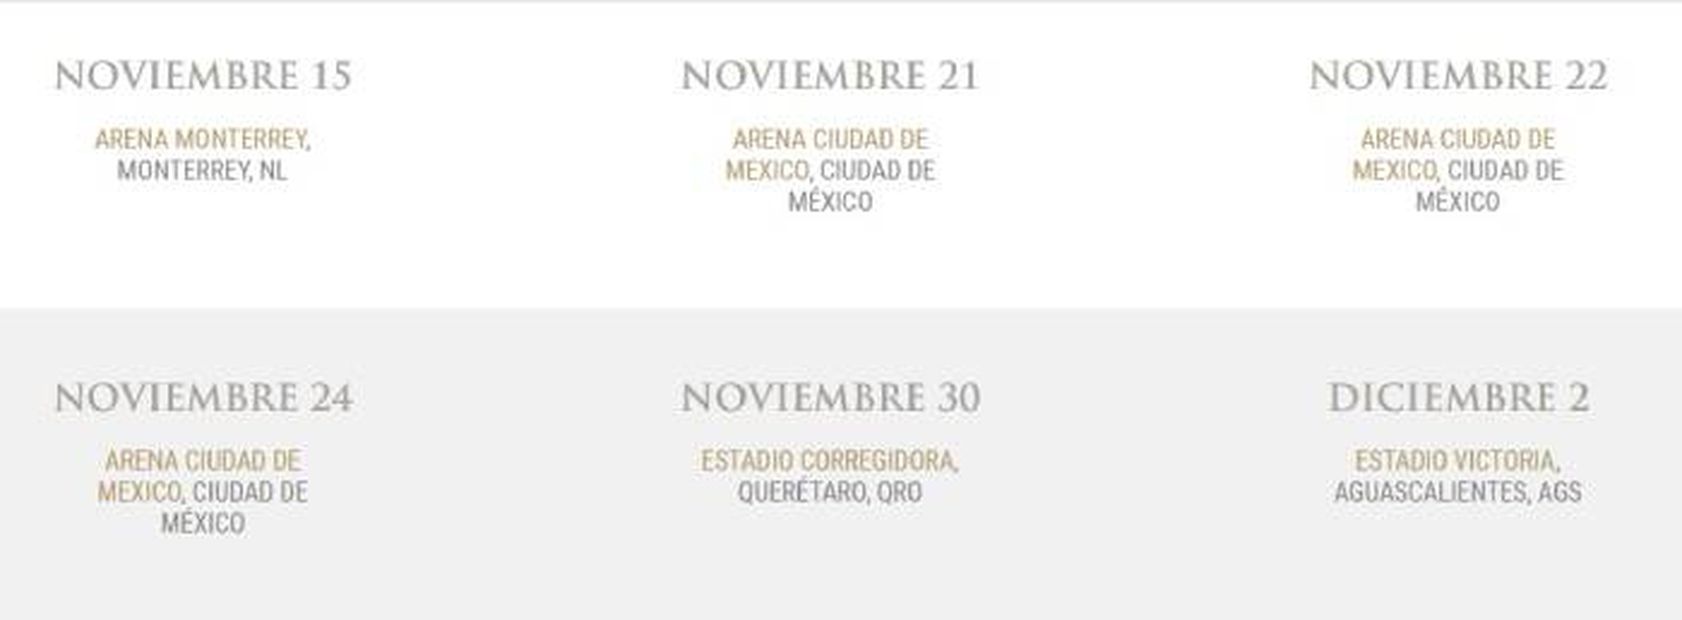 La página oficial de "El Sol" reveló los escenarios que visitará el cantante. Foto: Luis Miguel oficial